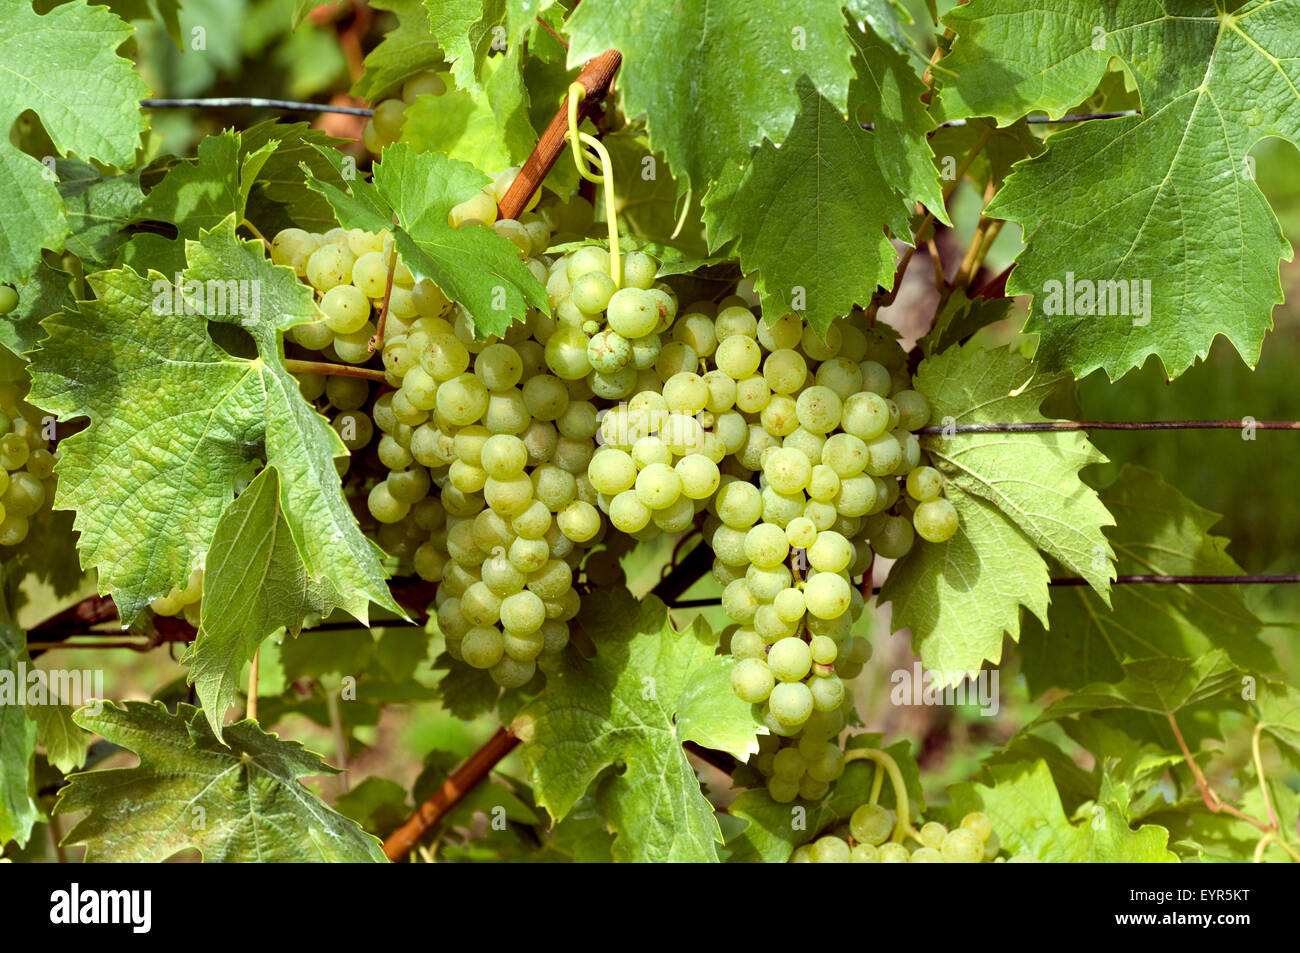 Mueller Thurgau, Weisse Weintrauben, Wein, Weinpflanzen, Reben, Fruechte, Beeren, Obst, Stock Photo